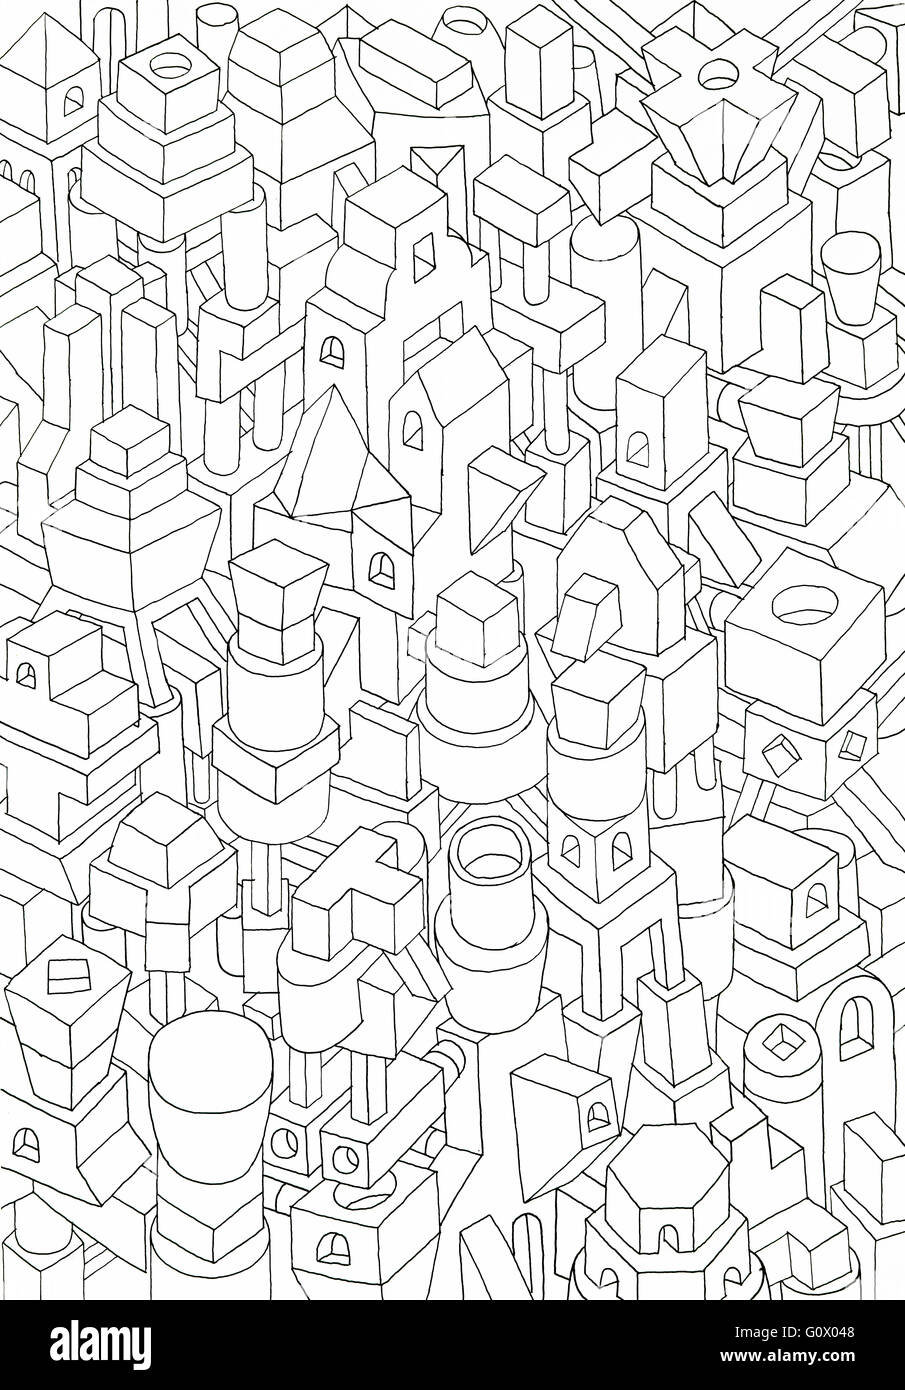 Las formas geométricas dibujadas con lápiz o tinta, mermelada de formas y significados en una ciudad Foto de stock